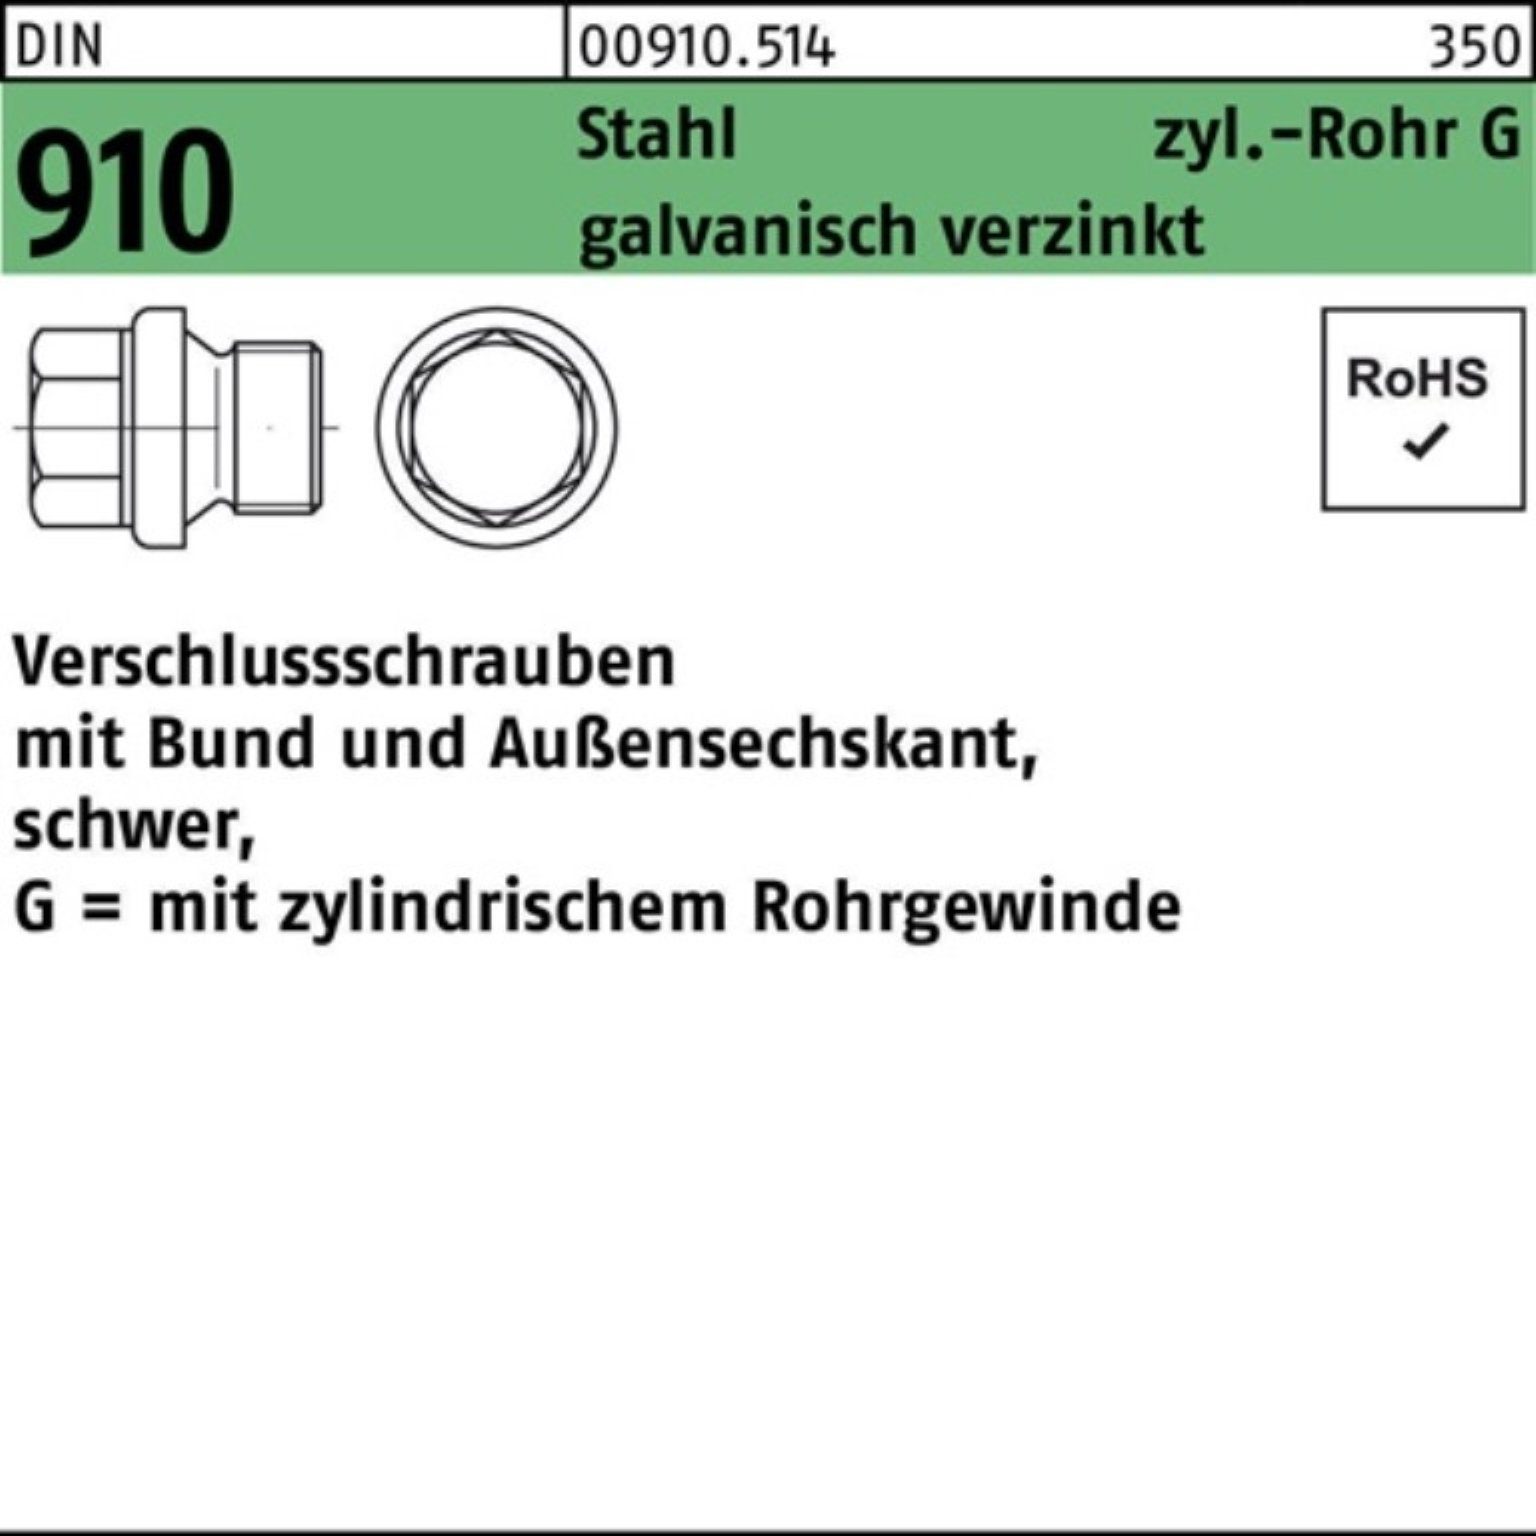 Bund/Außen-6-kt 1 Verschlußschraube Stahl Pack 100er G 910 A Reyher Schraube 1/4 DIN